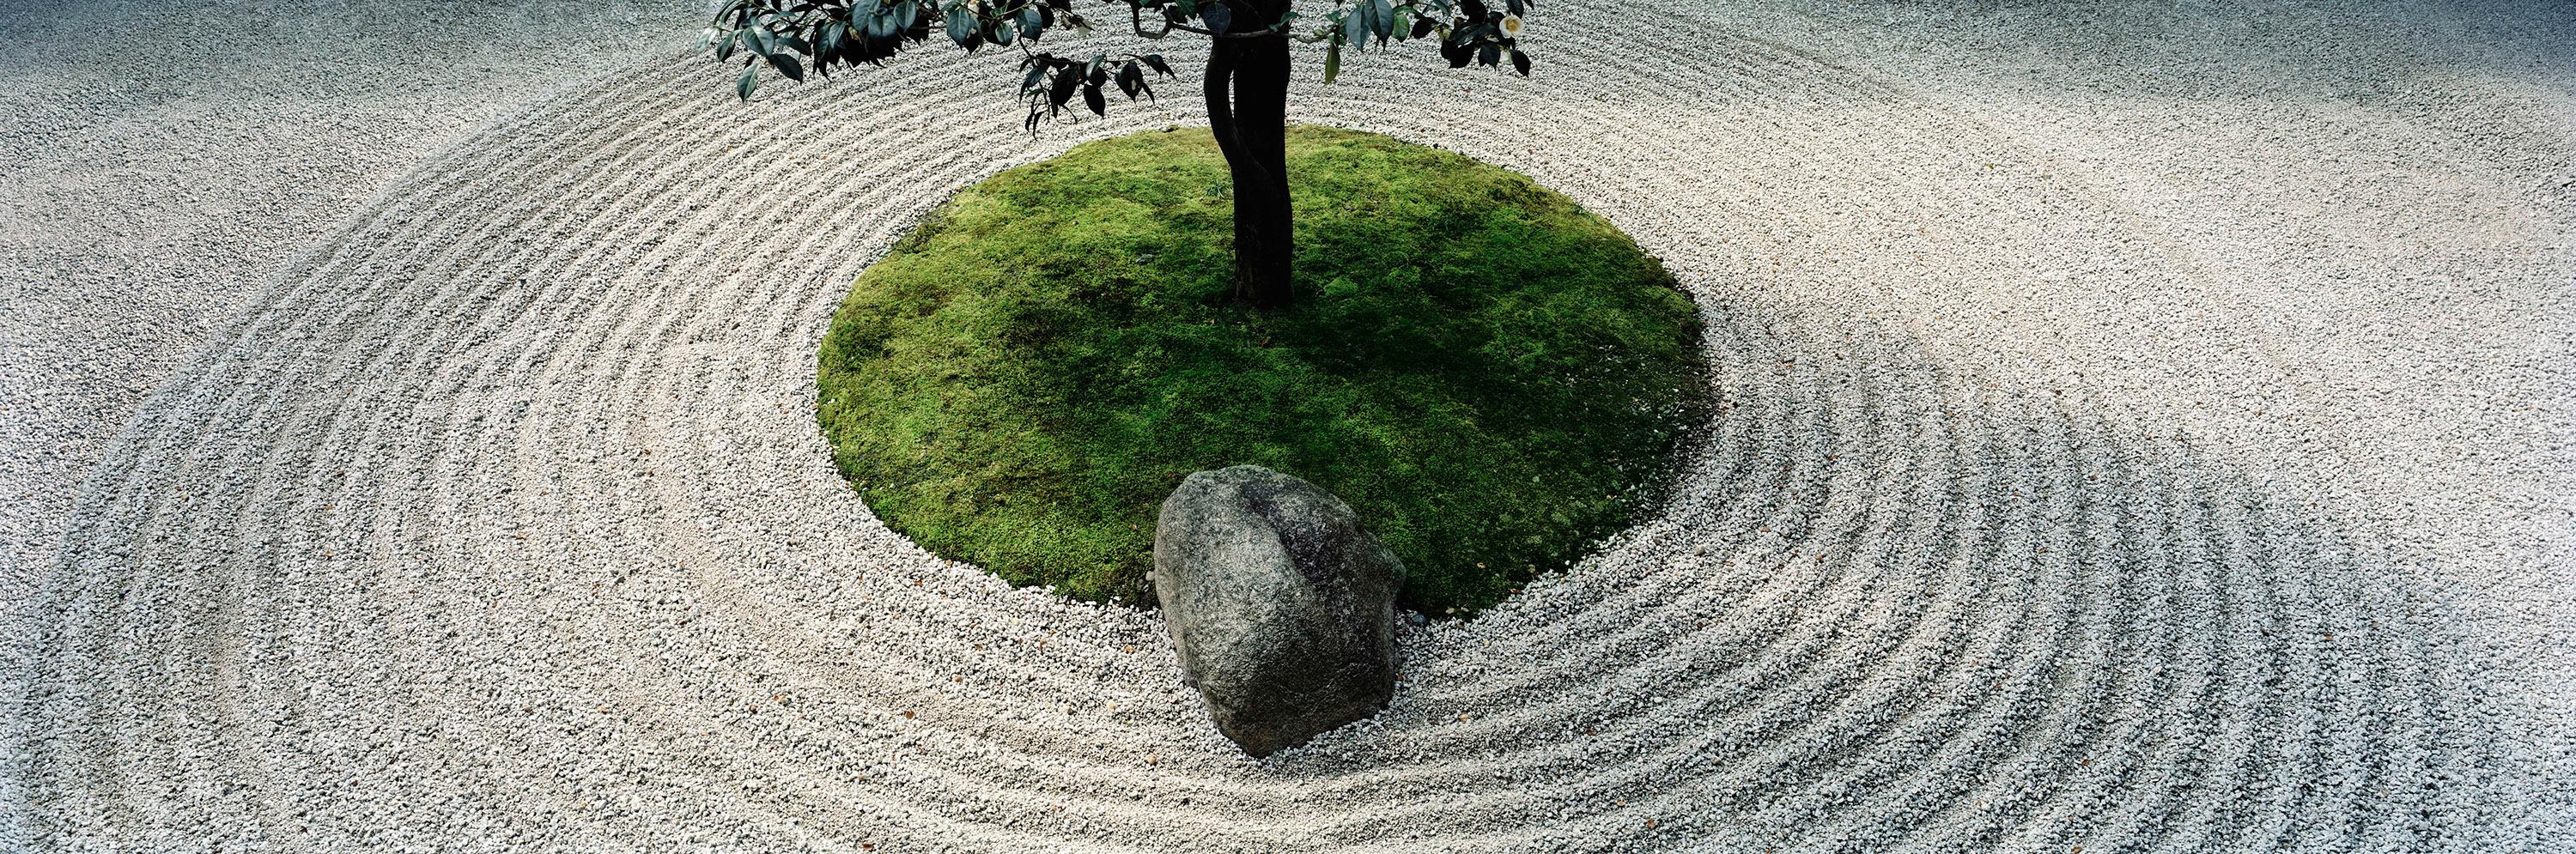 Landscape Photograph Christian Houge - "Zen Garden", Tokyo, de la série Okurimono - Paysage japonais